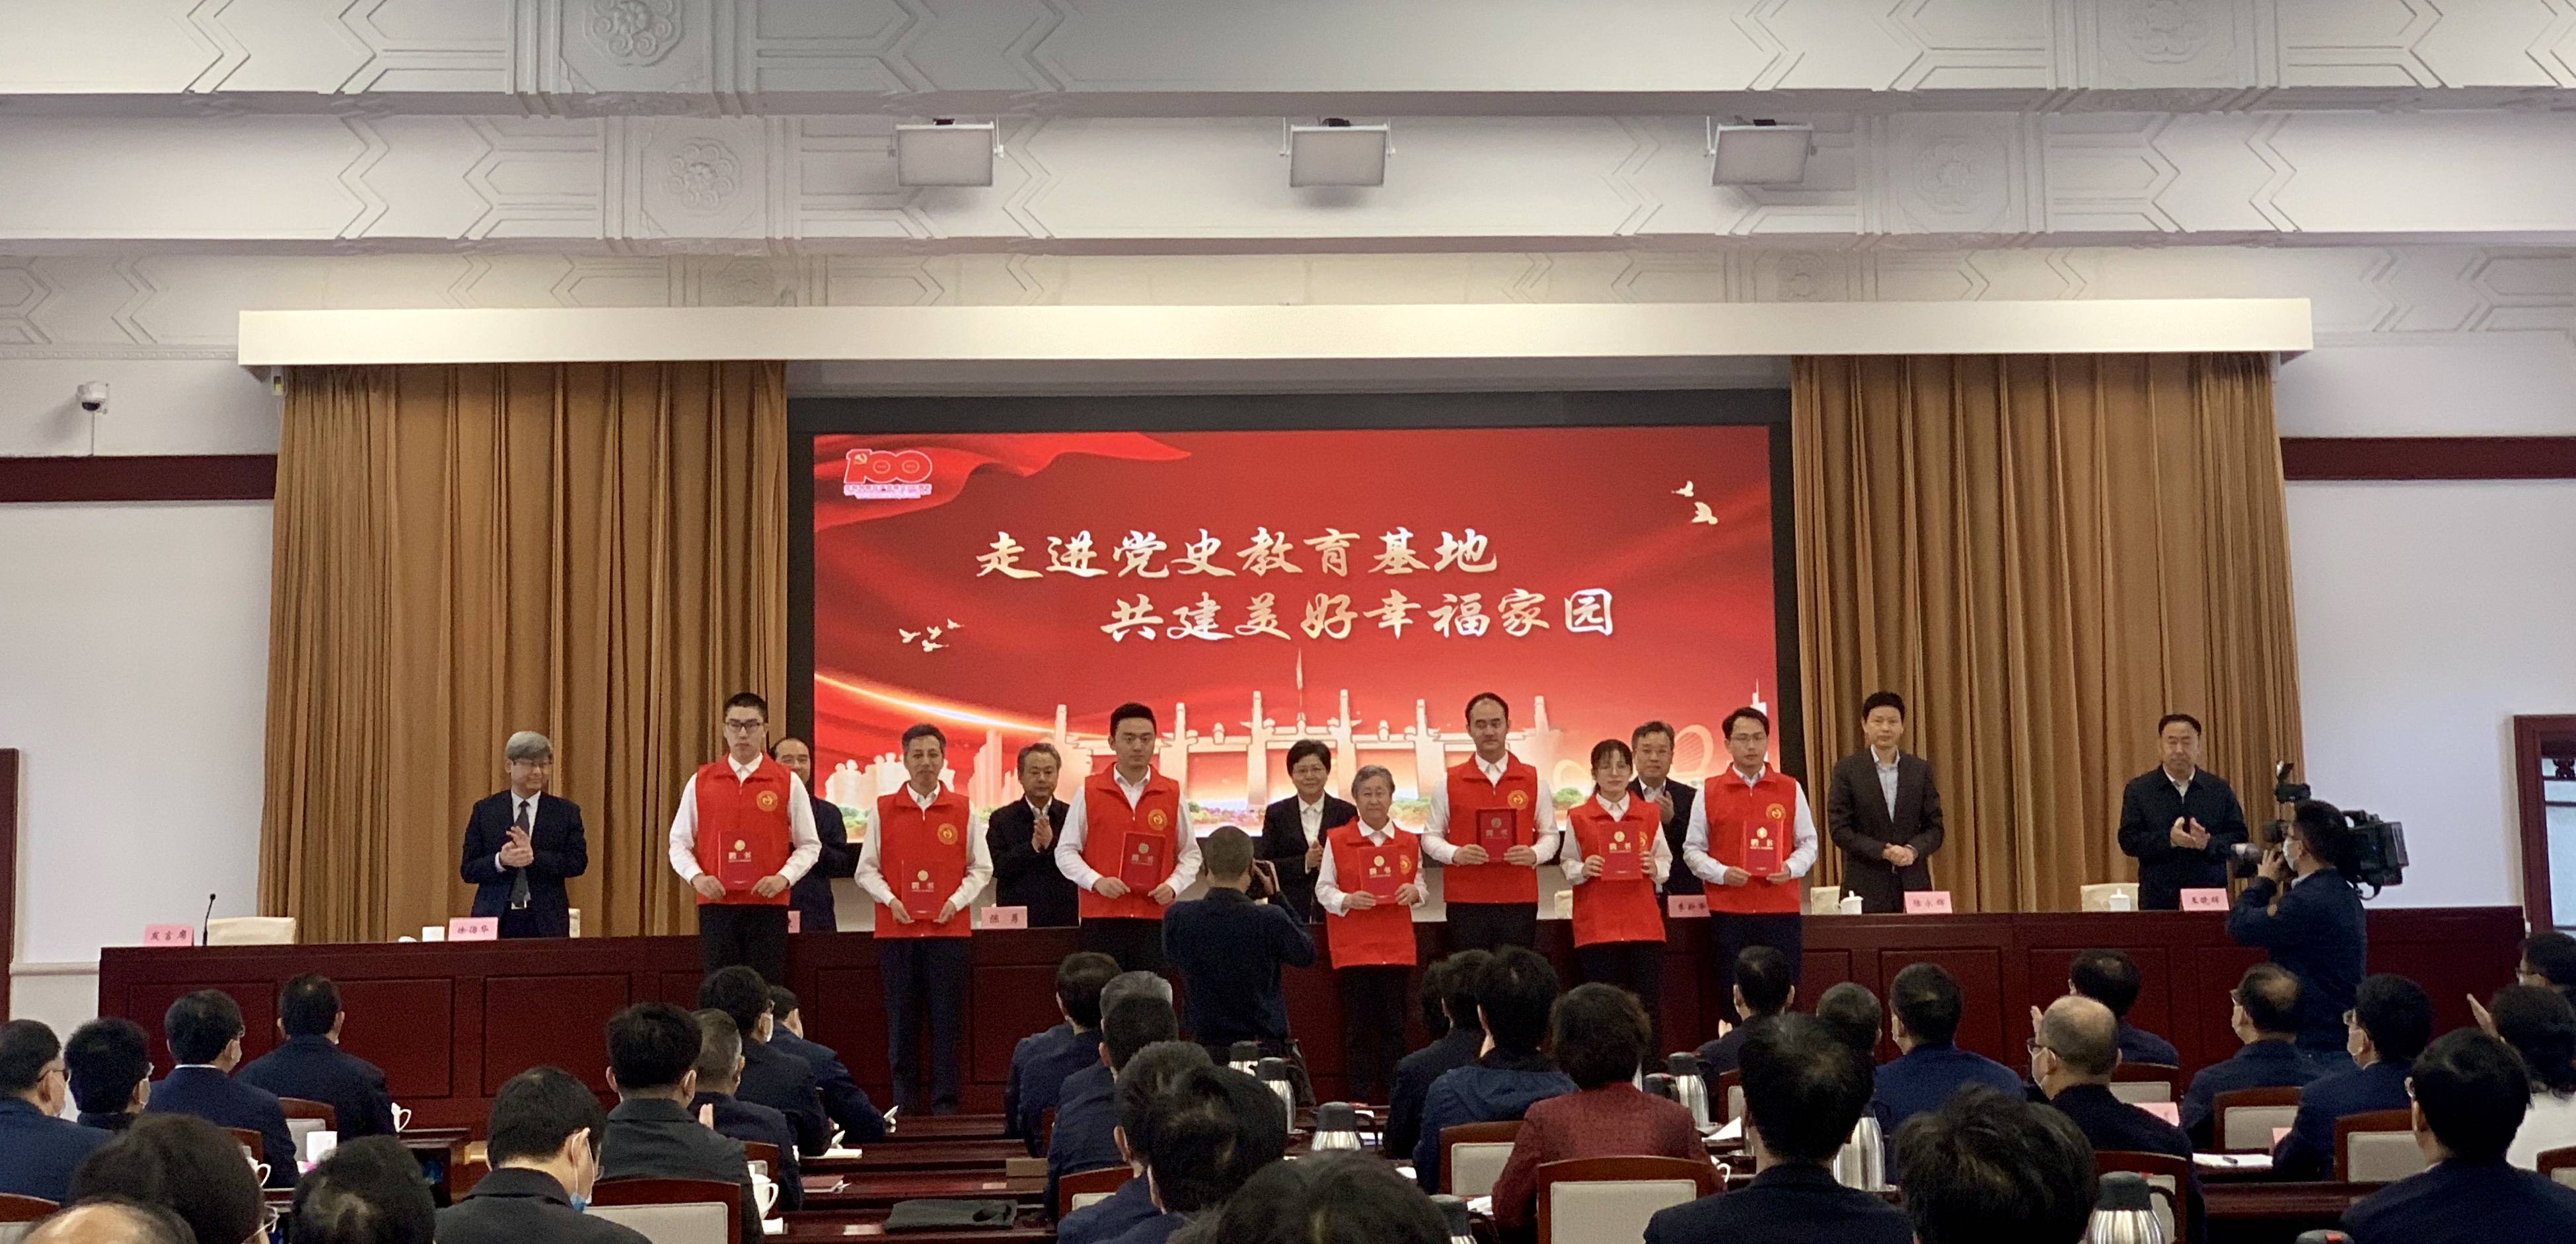 现场为南京红色文化志愿者联盟的志愿者代表颁发聘书